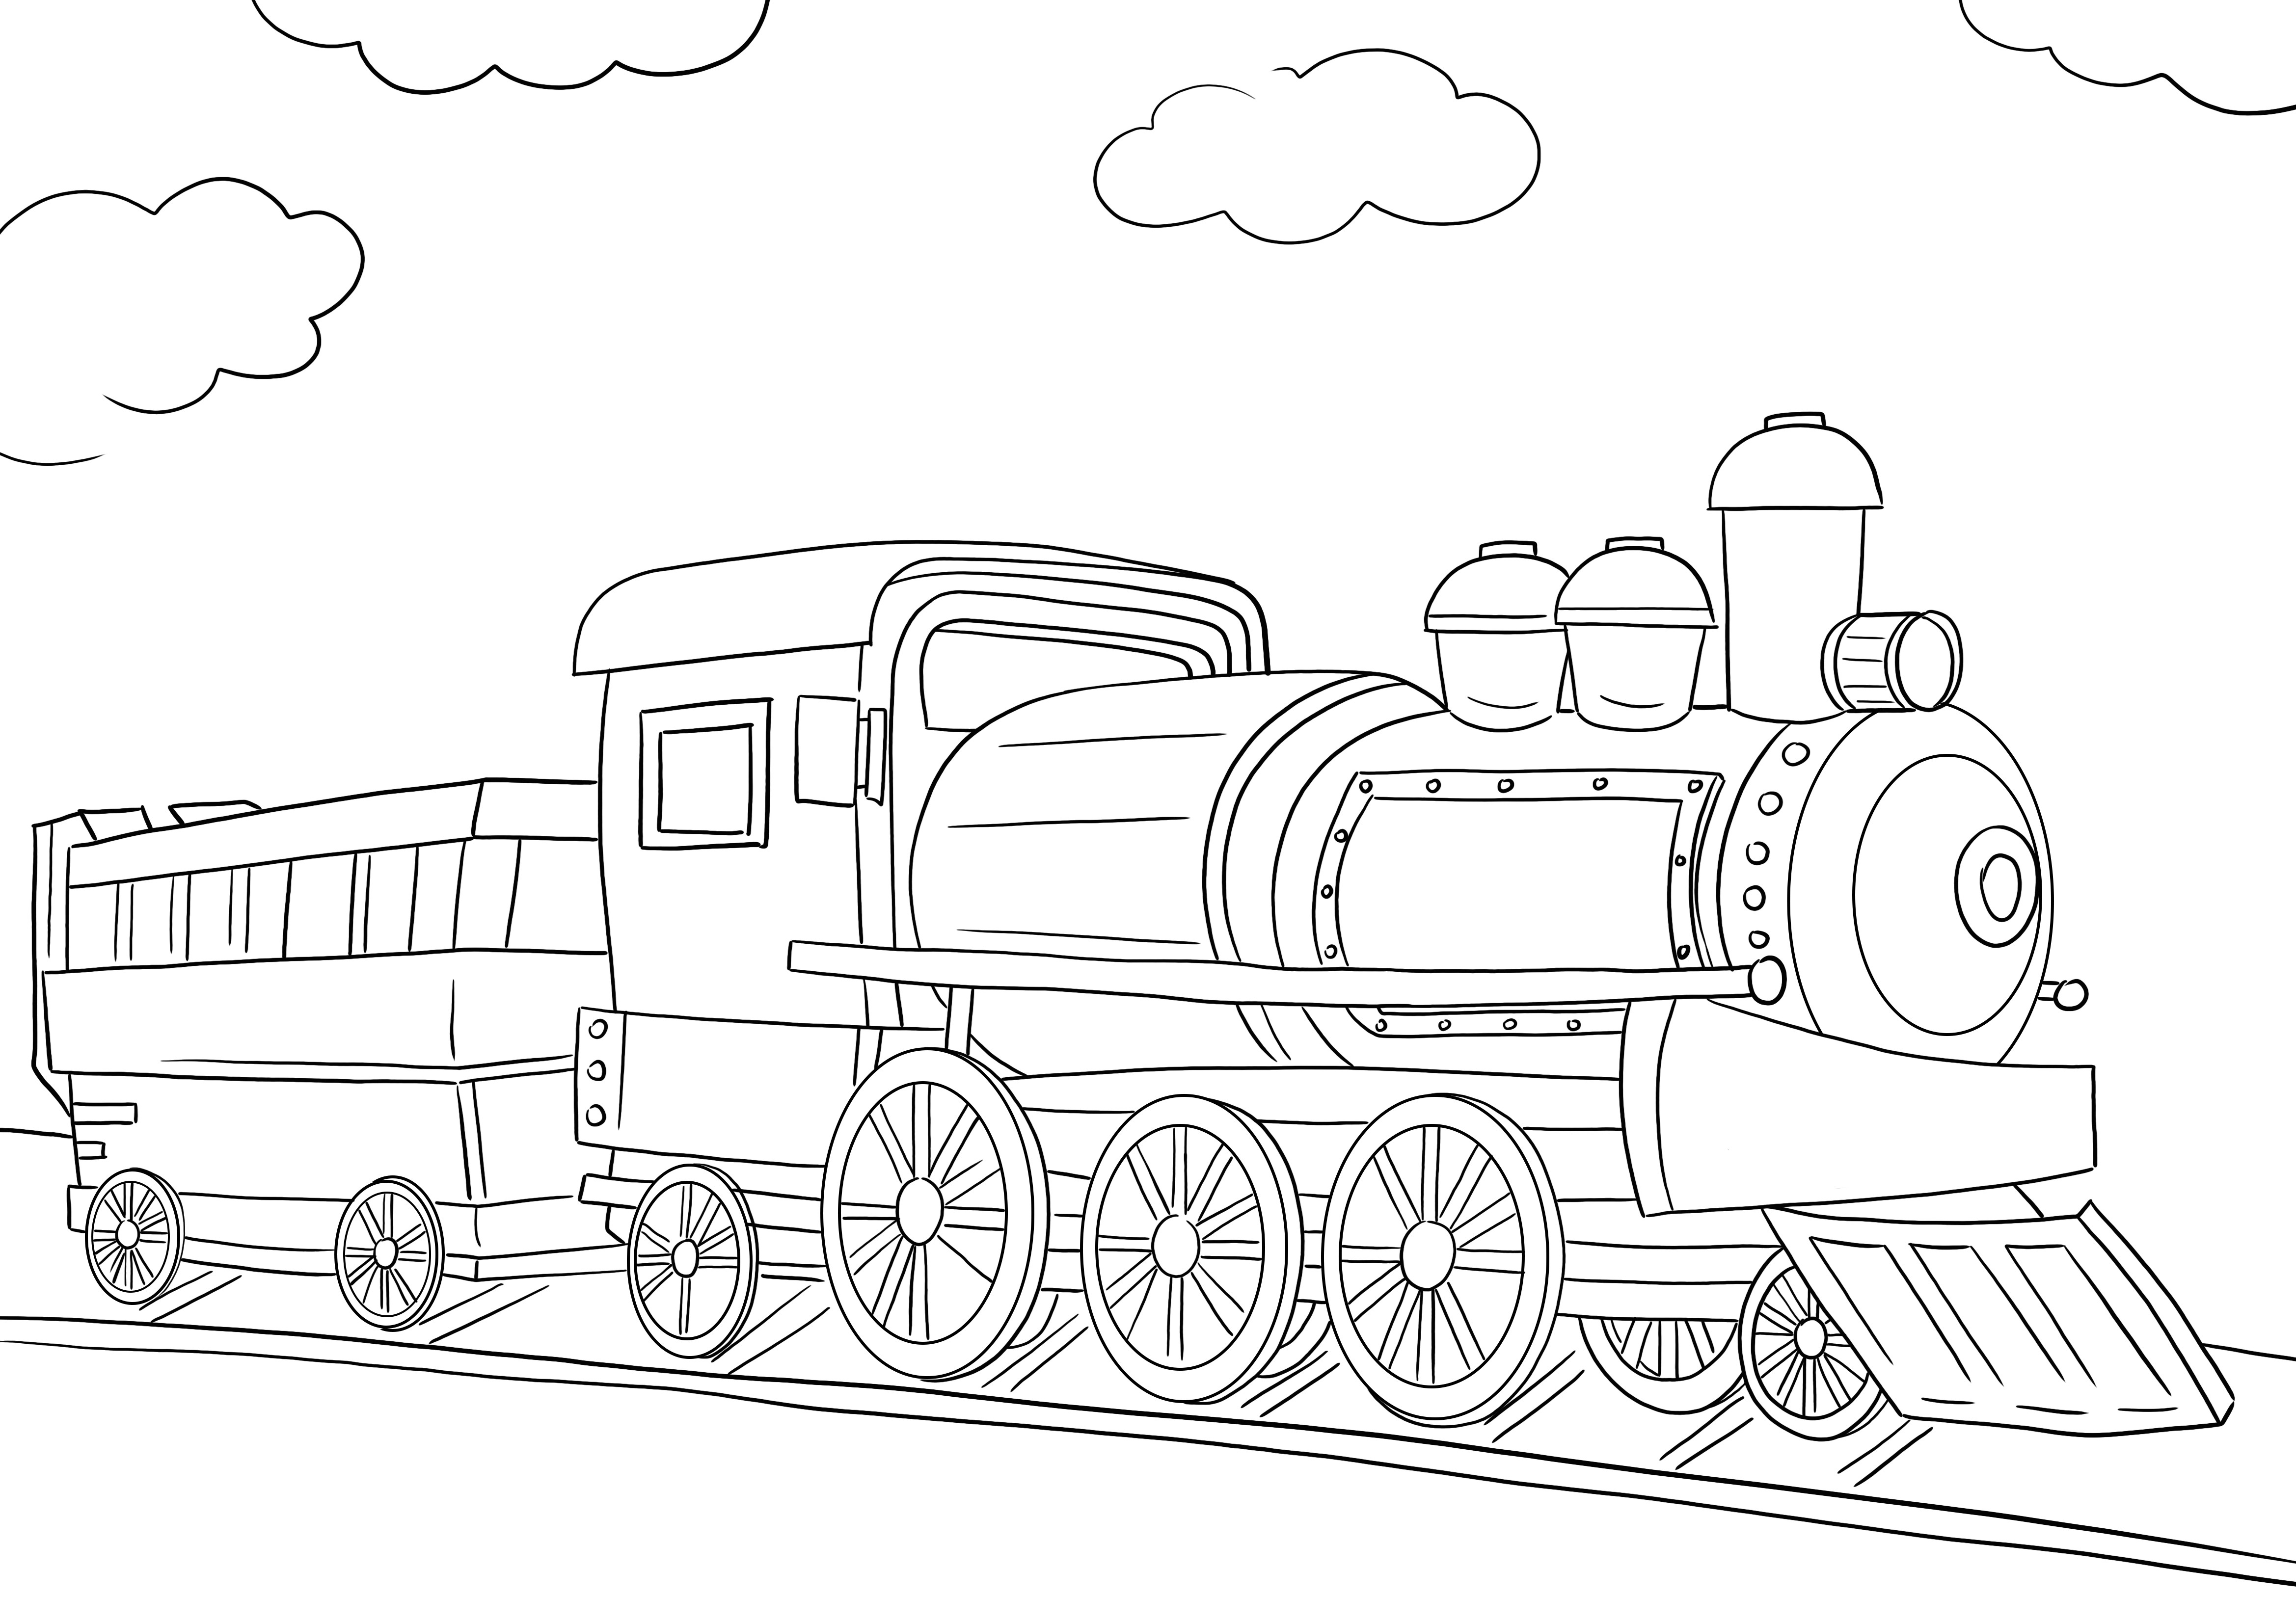 Une image à colorier gratuite d'une locomotive de train à imprimer ou à télécharger